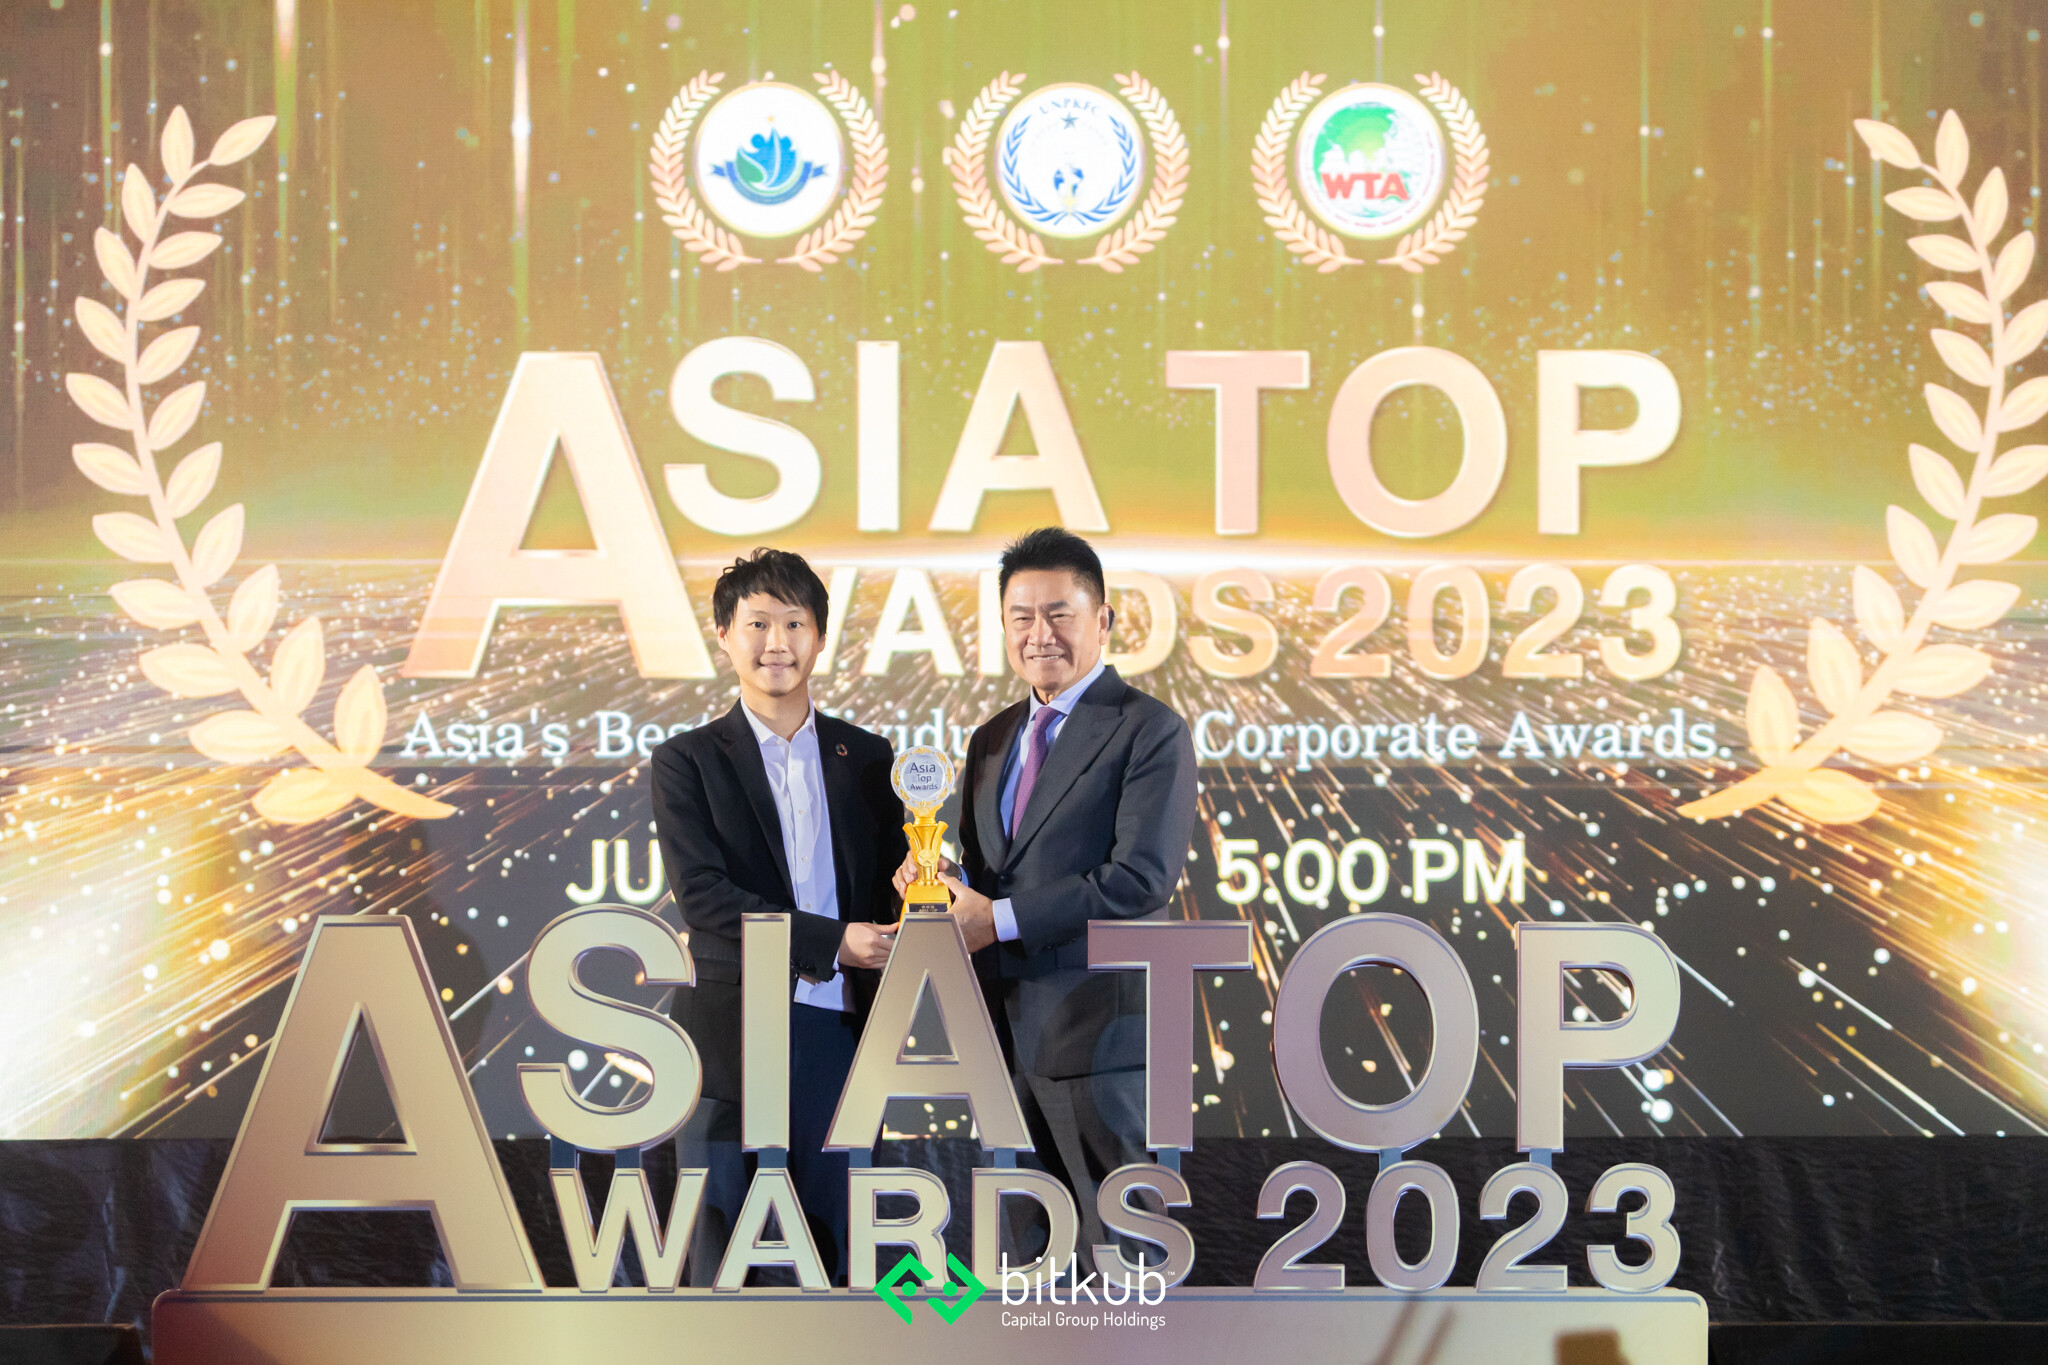 "ท๊อป จิรายุส ทรัพย์ศรีโสภา" คว้ารางวัล ASIA TOP AWARDS 2023 สาขา Best CEO of the Year